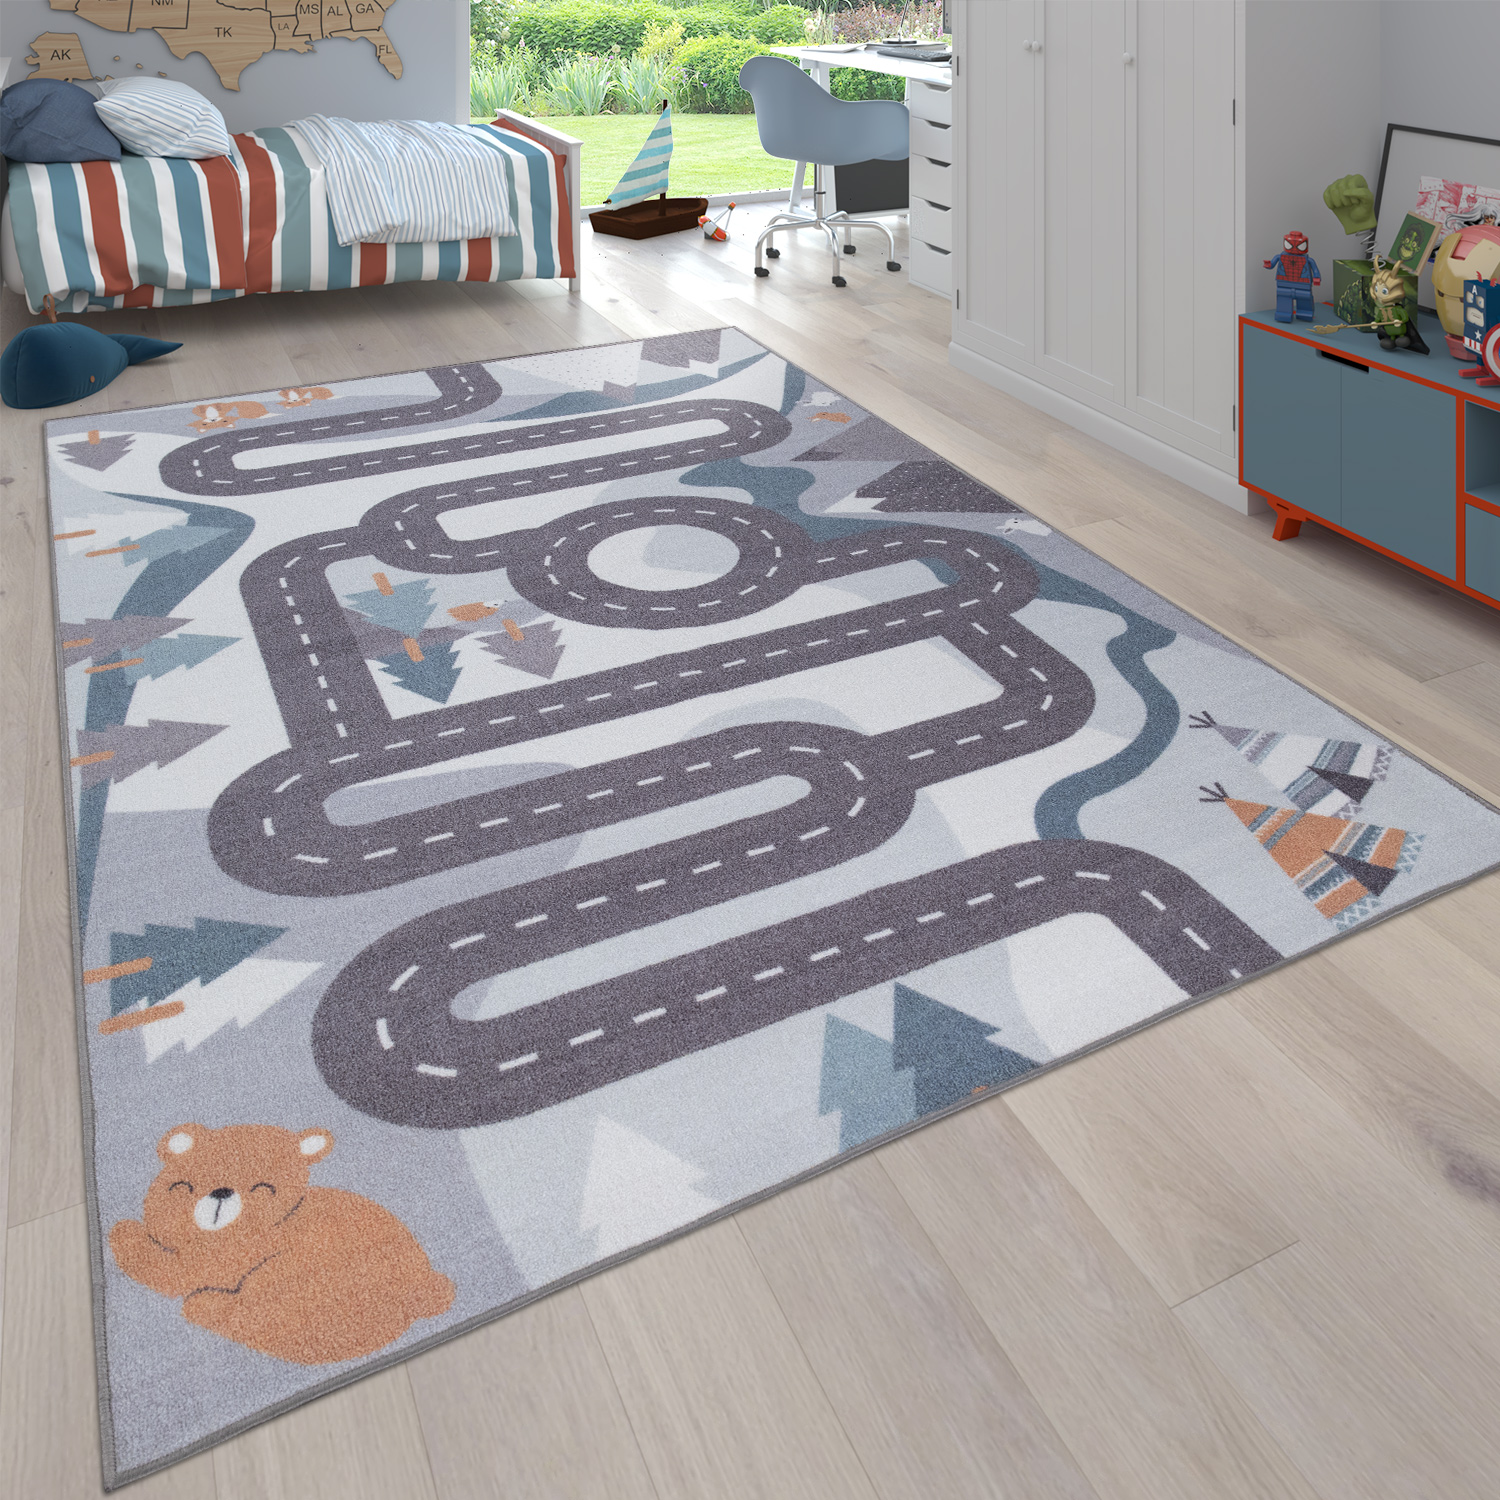 Kinderteppich Straßenteppich Spielteppich Kinderzimmer Straße Teppiche 130*100cm